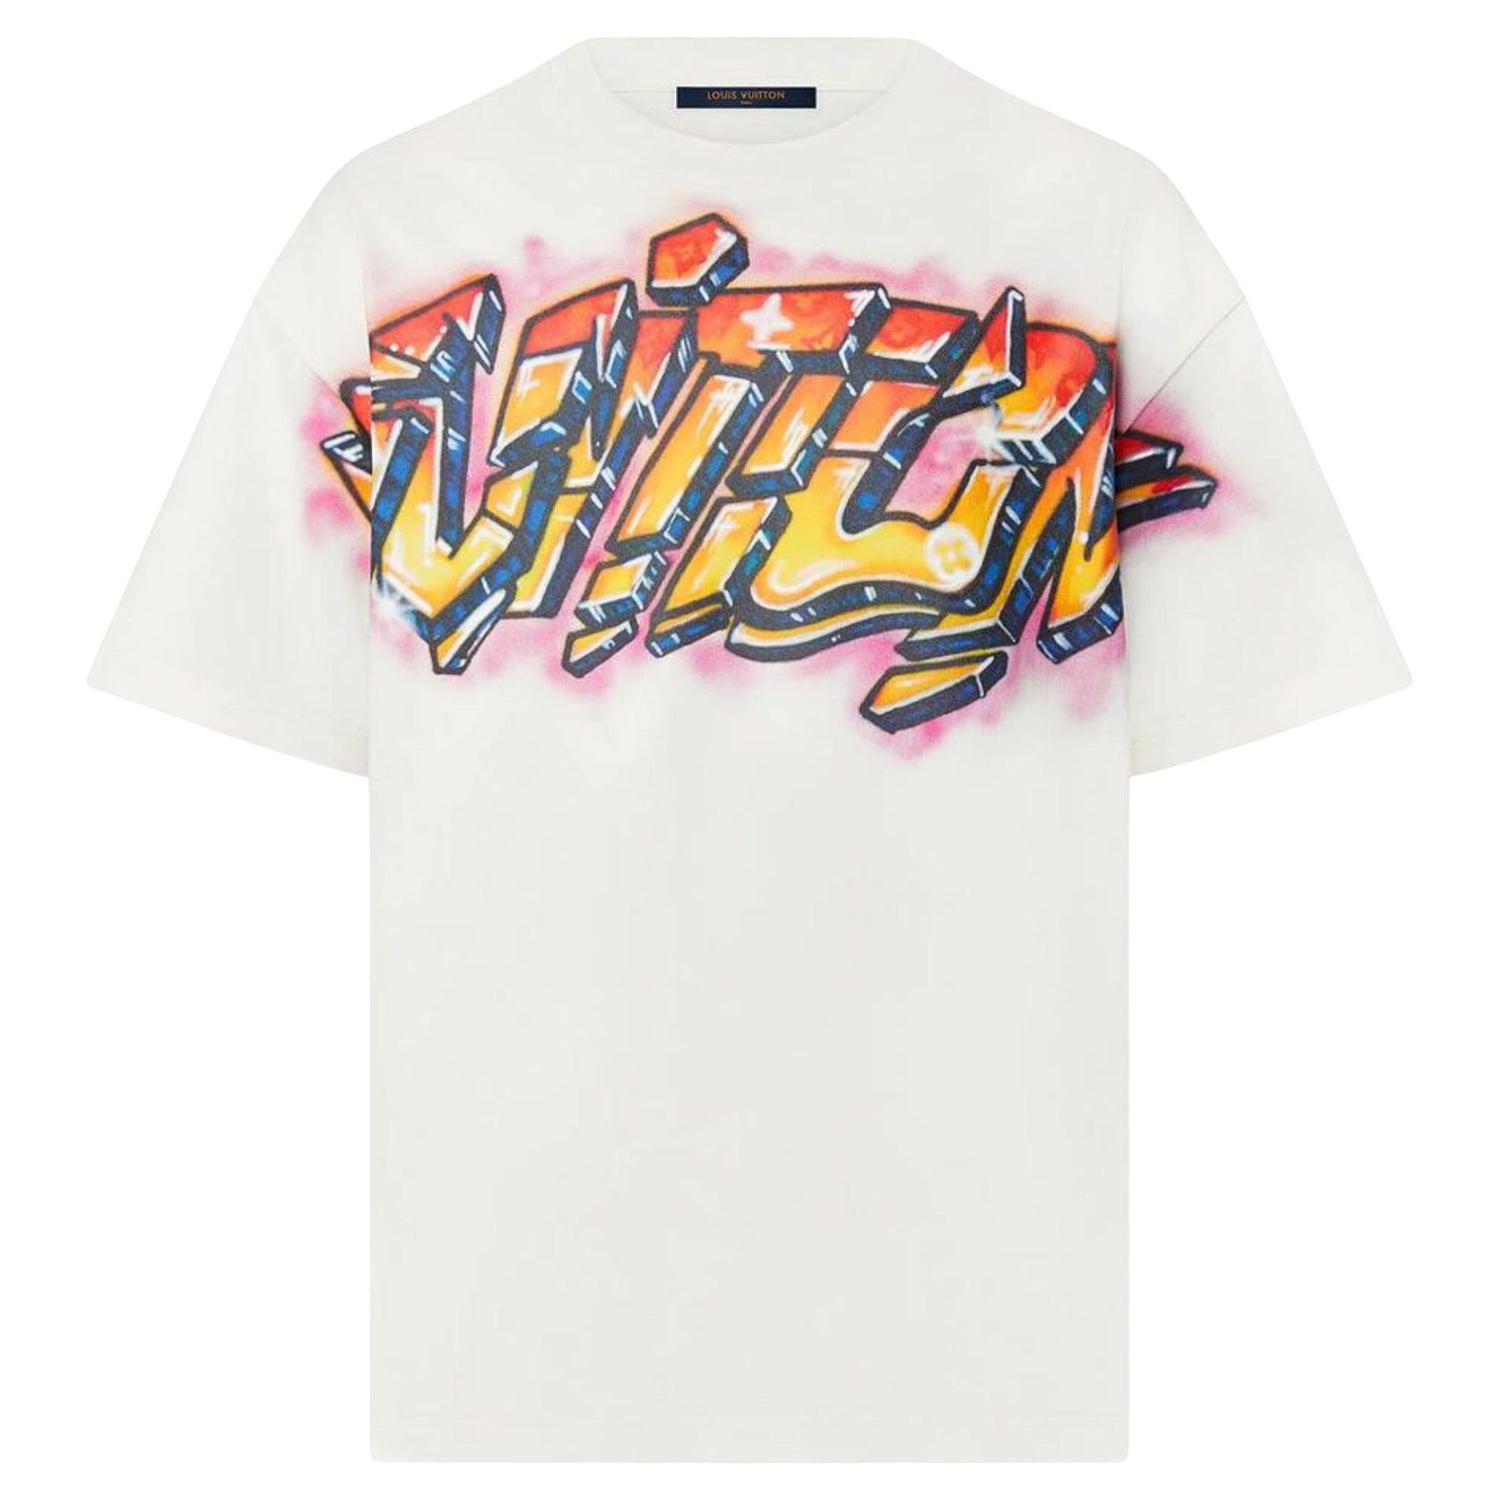 Louis Vuitton Monogram Graffiti T-shirt Tee Black Pink Stephen